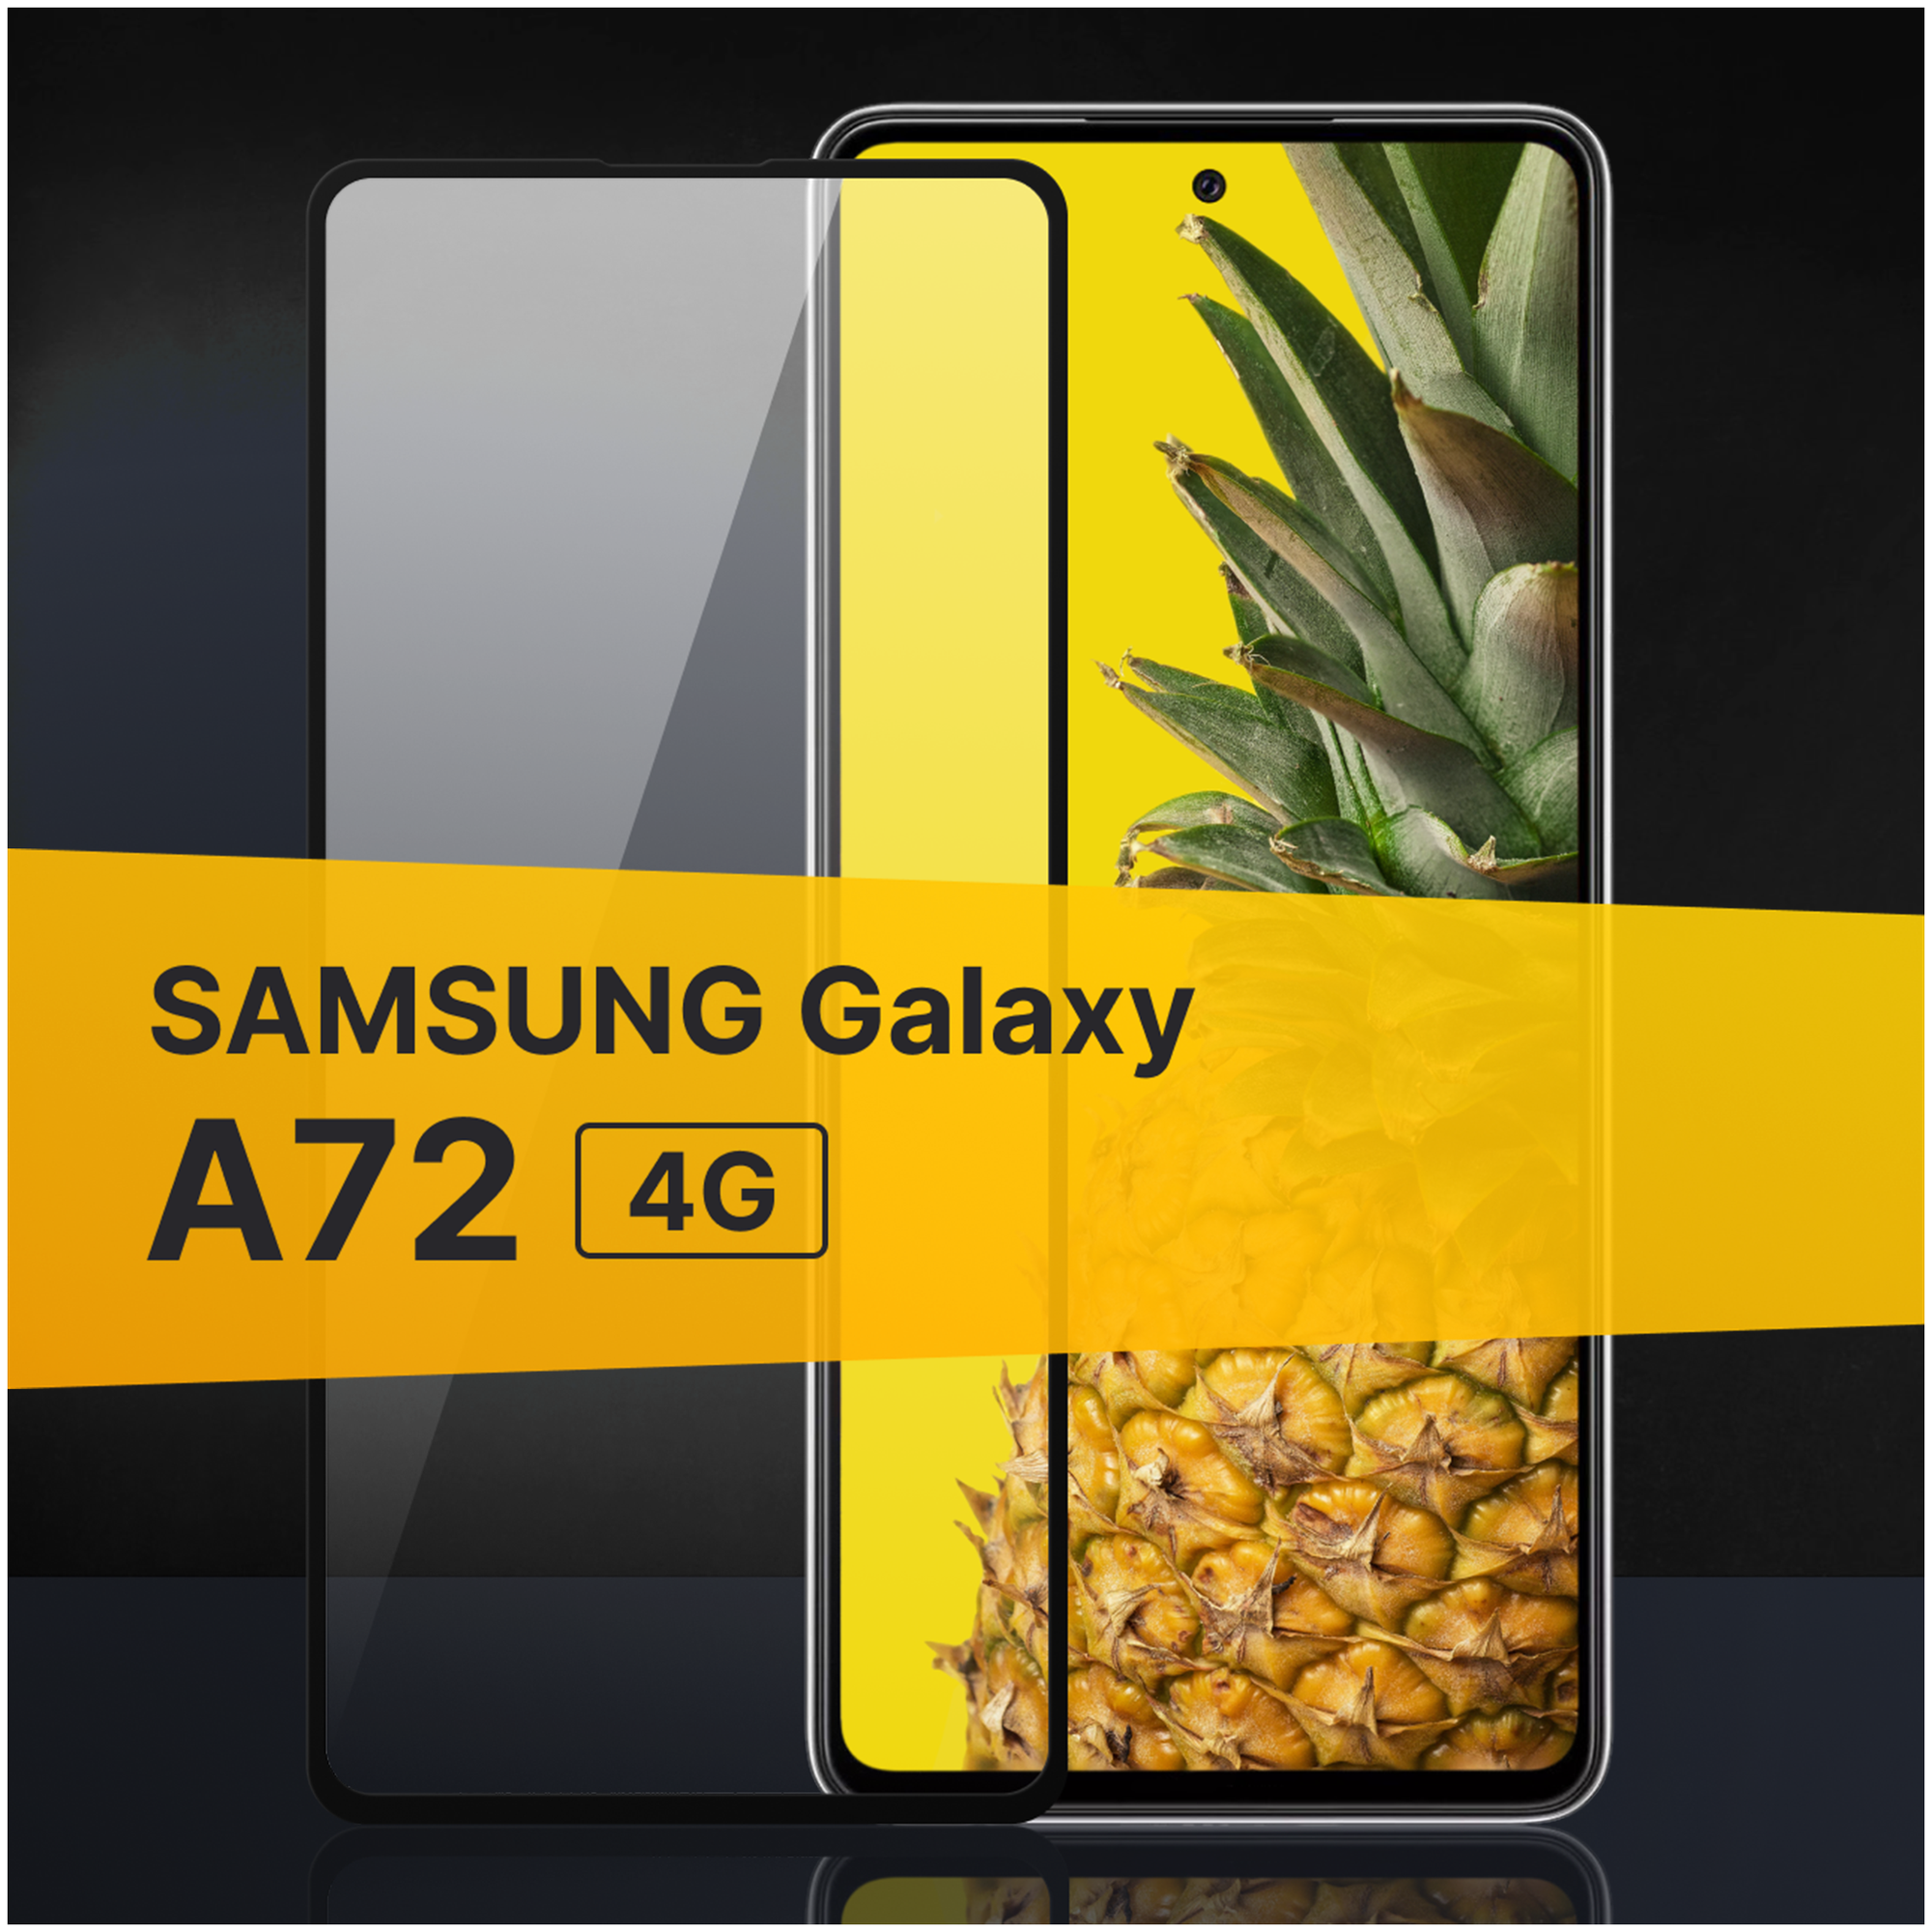 Противоударное защитное стекло для телефона Samsung Galaxy A72 4G / Полноклеевое 3D стекло с олеофобным покрытием на смартфон Самсунг Галакси А72 4Г / С черной рамкой